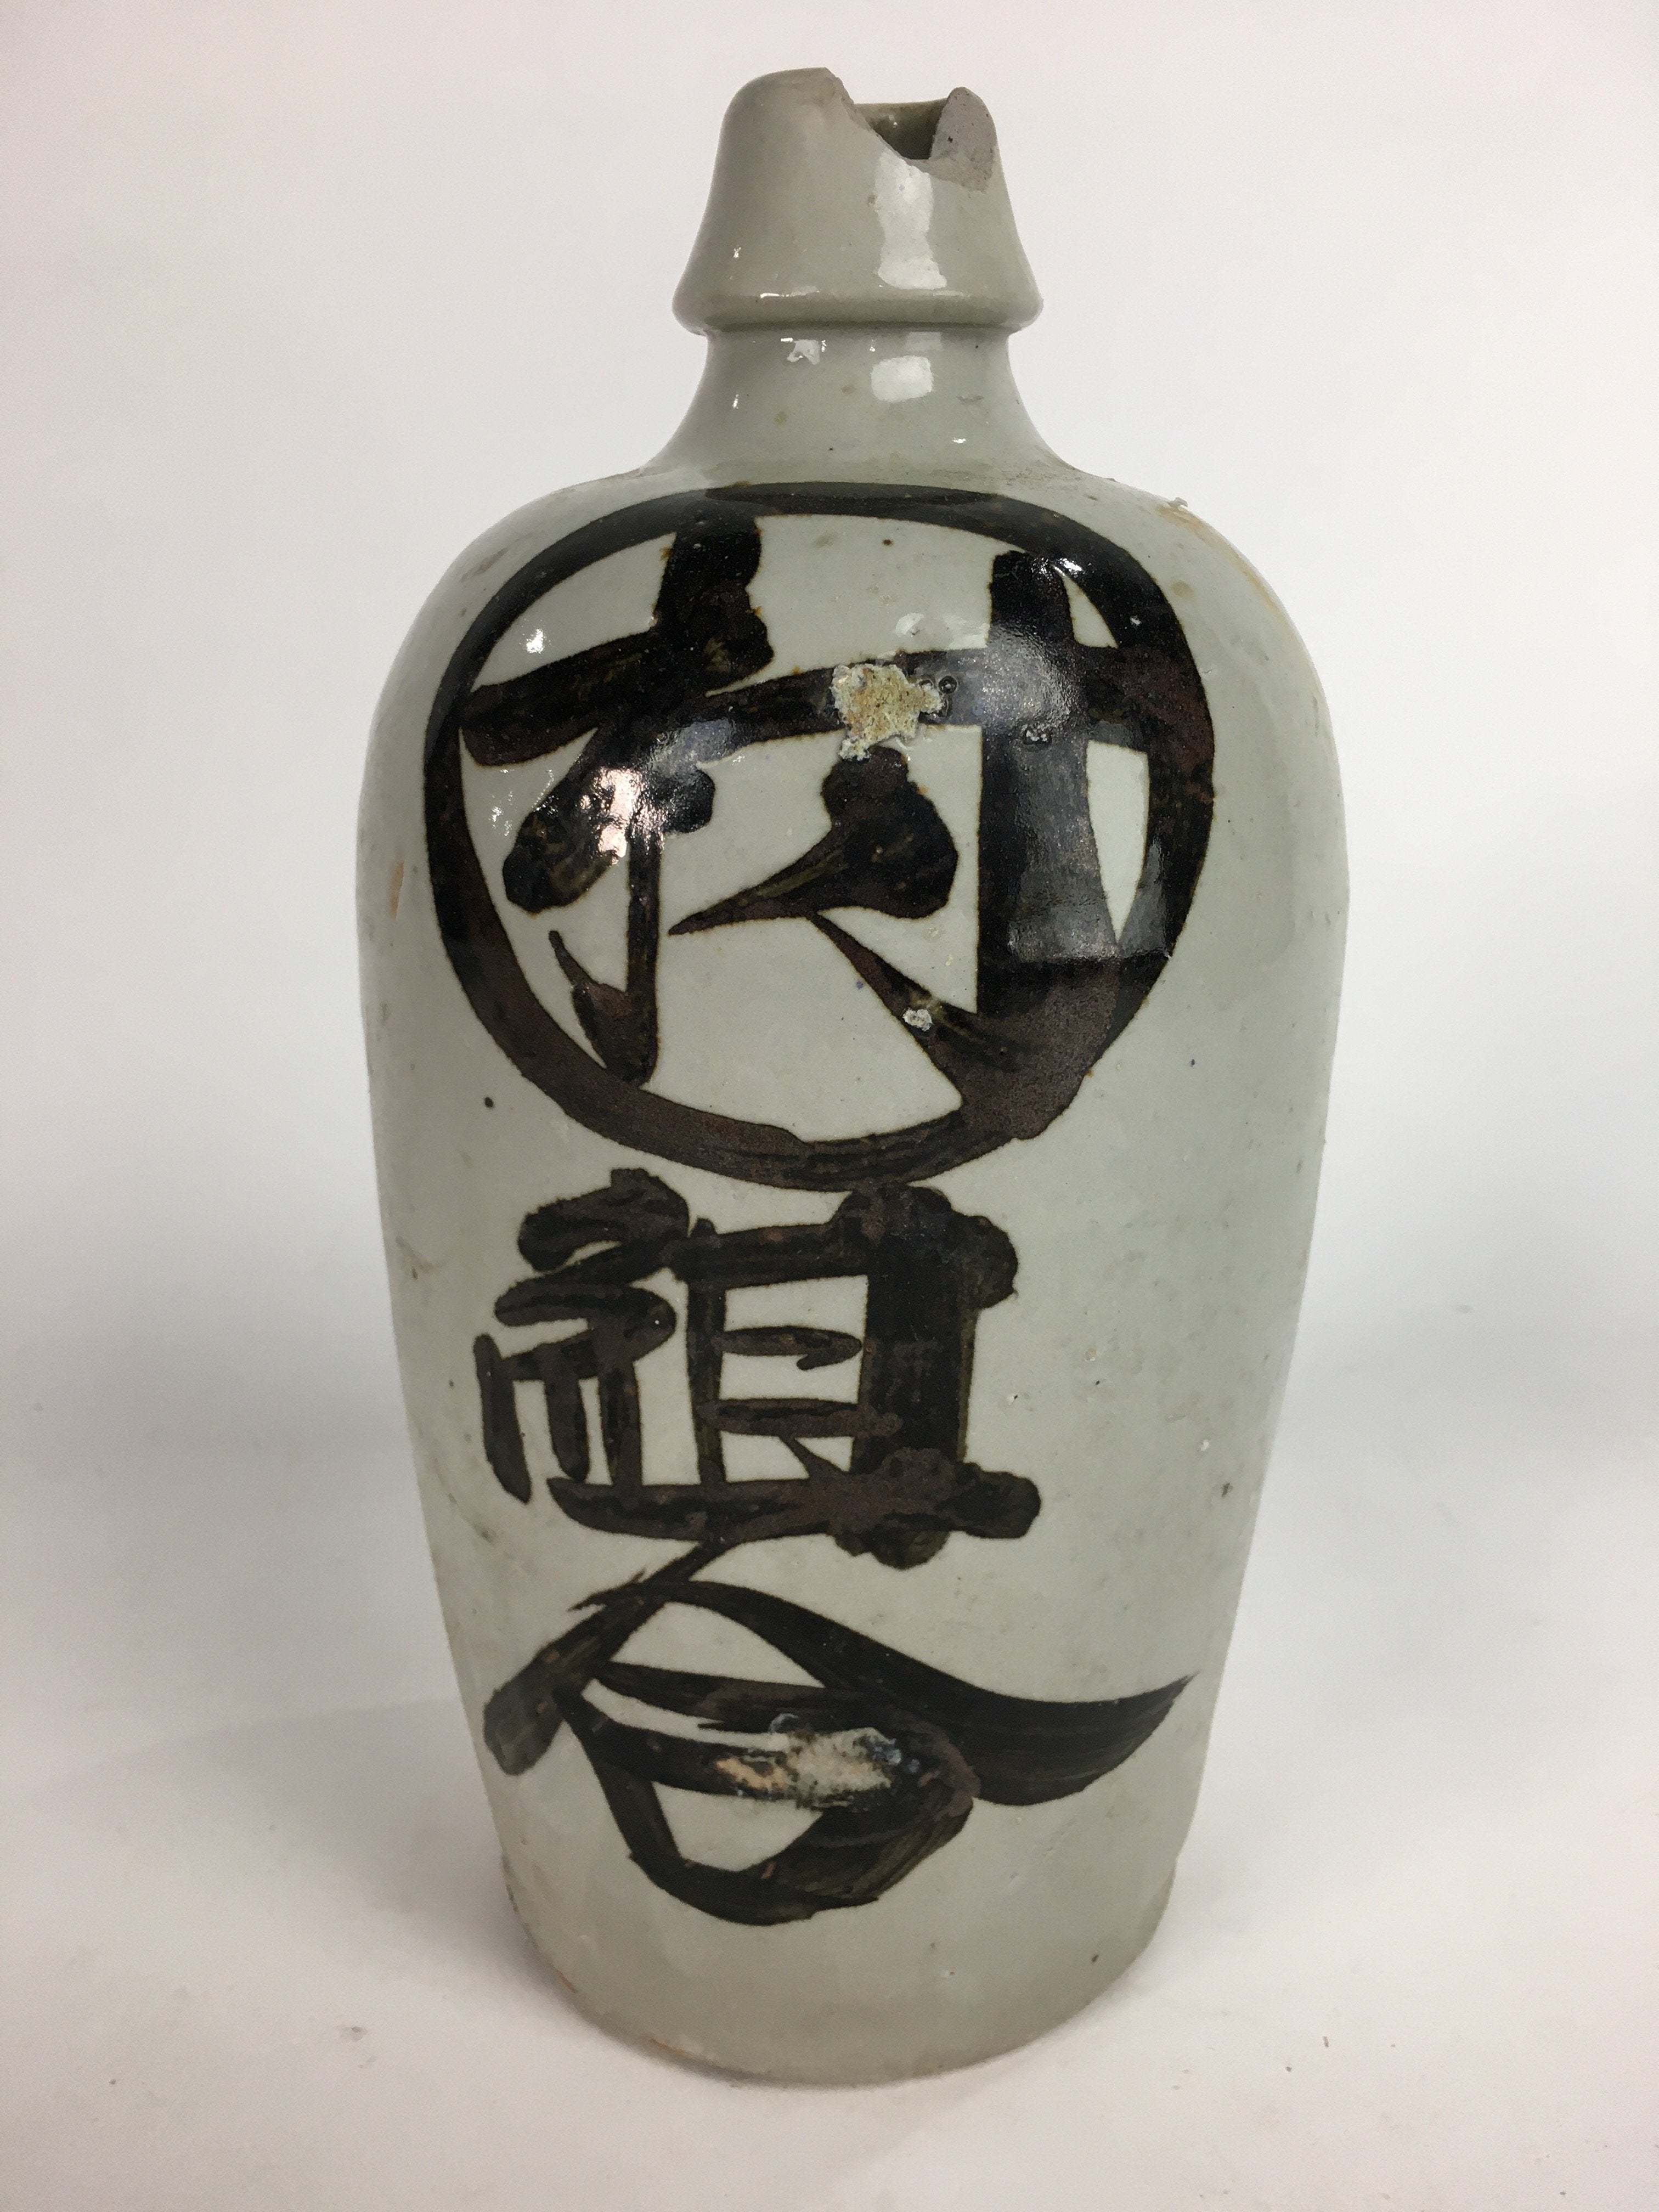 Japanese Ceramic Sake Bottle Tokkuri Vtg Pottery Gray Hand-Written Kanji TS274